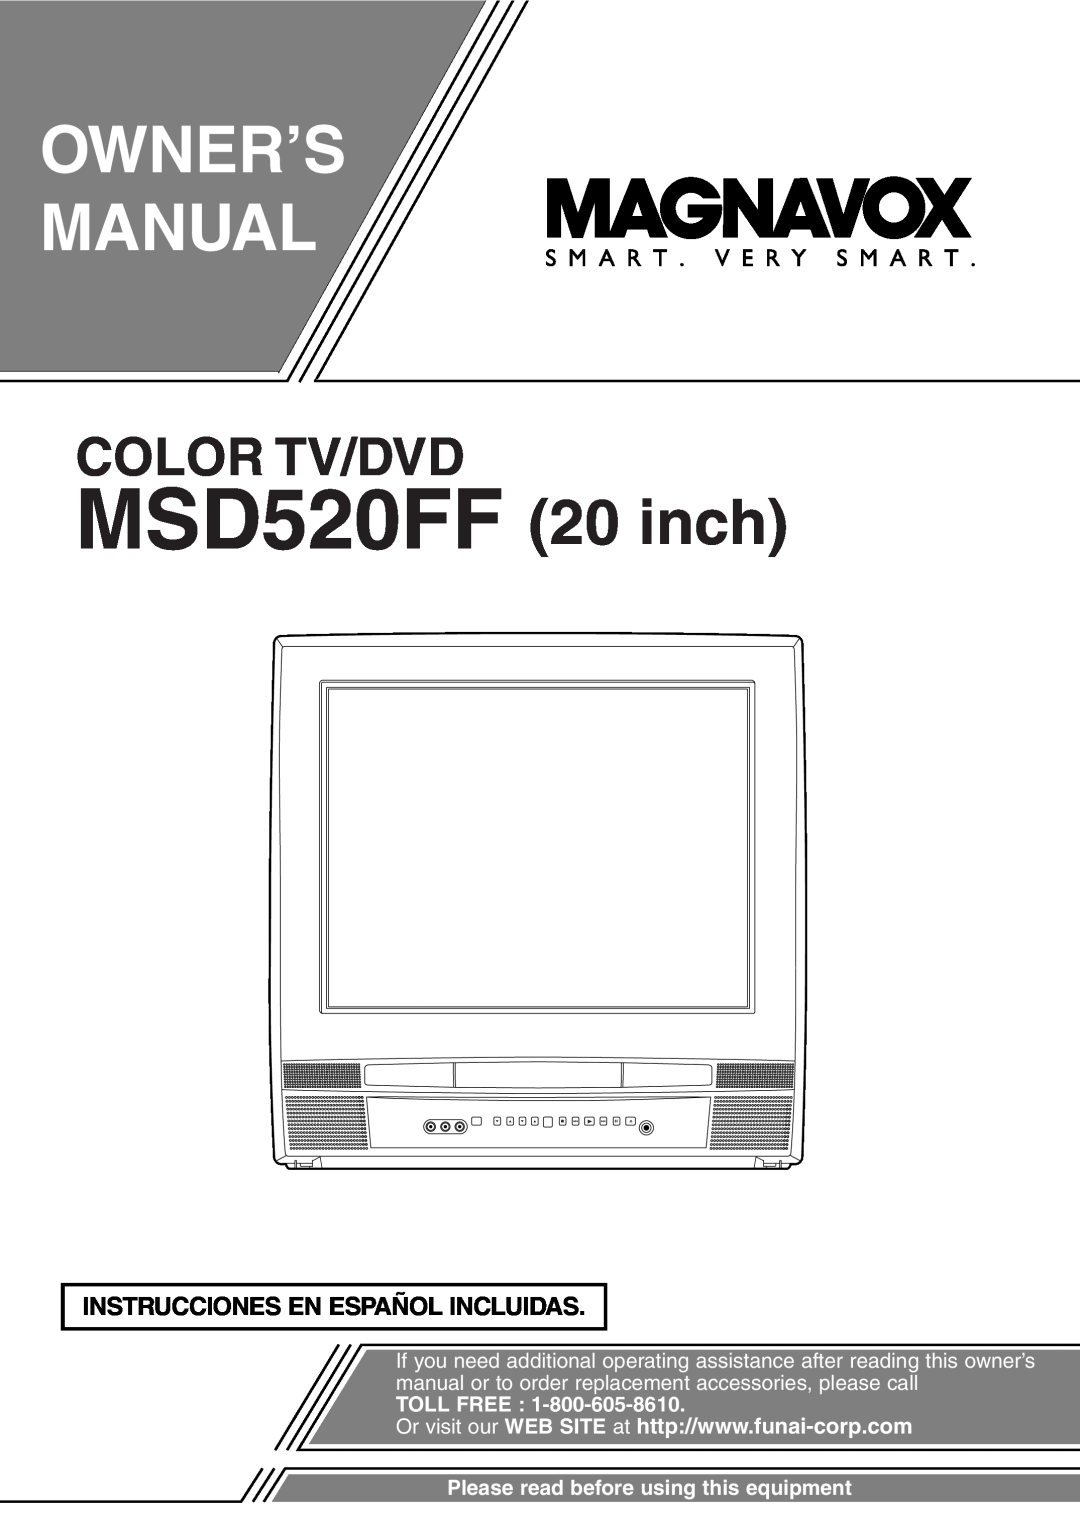 FUNAI owner manual Instrucciones En Español Incluidas, MSD520FF 20 inch, Color Tv/Dvd, Toll Free, L K L Kc H B G F A 